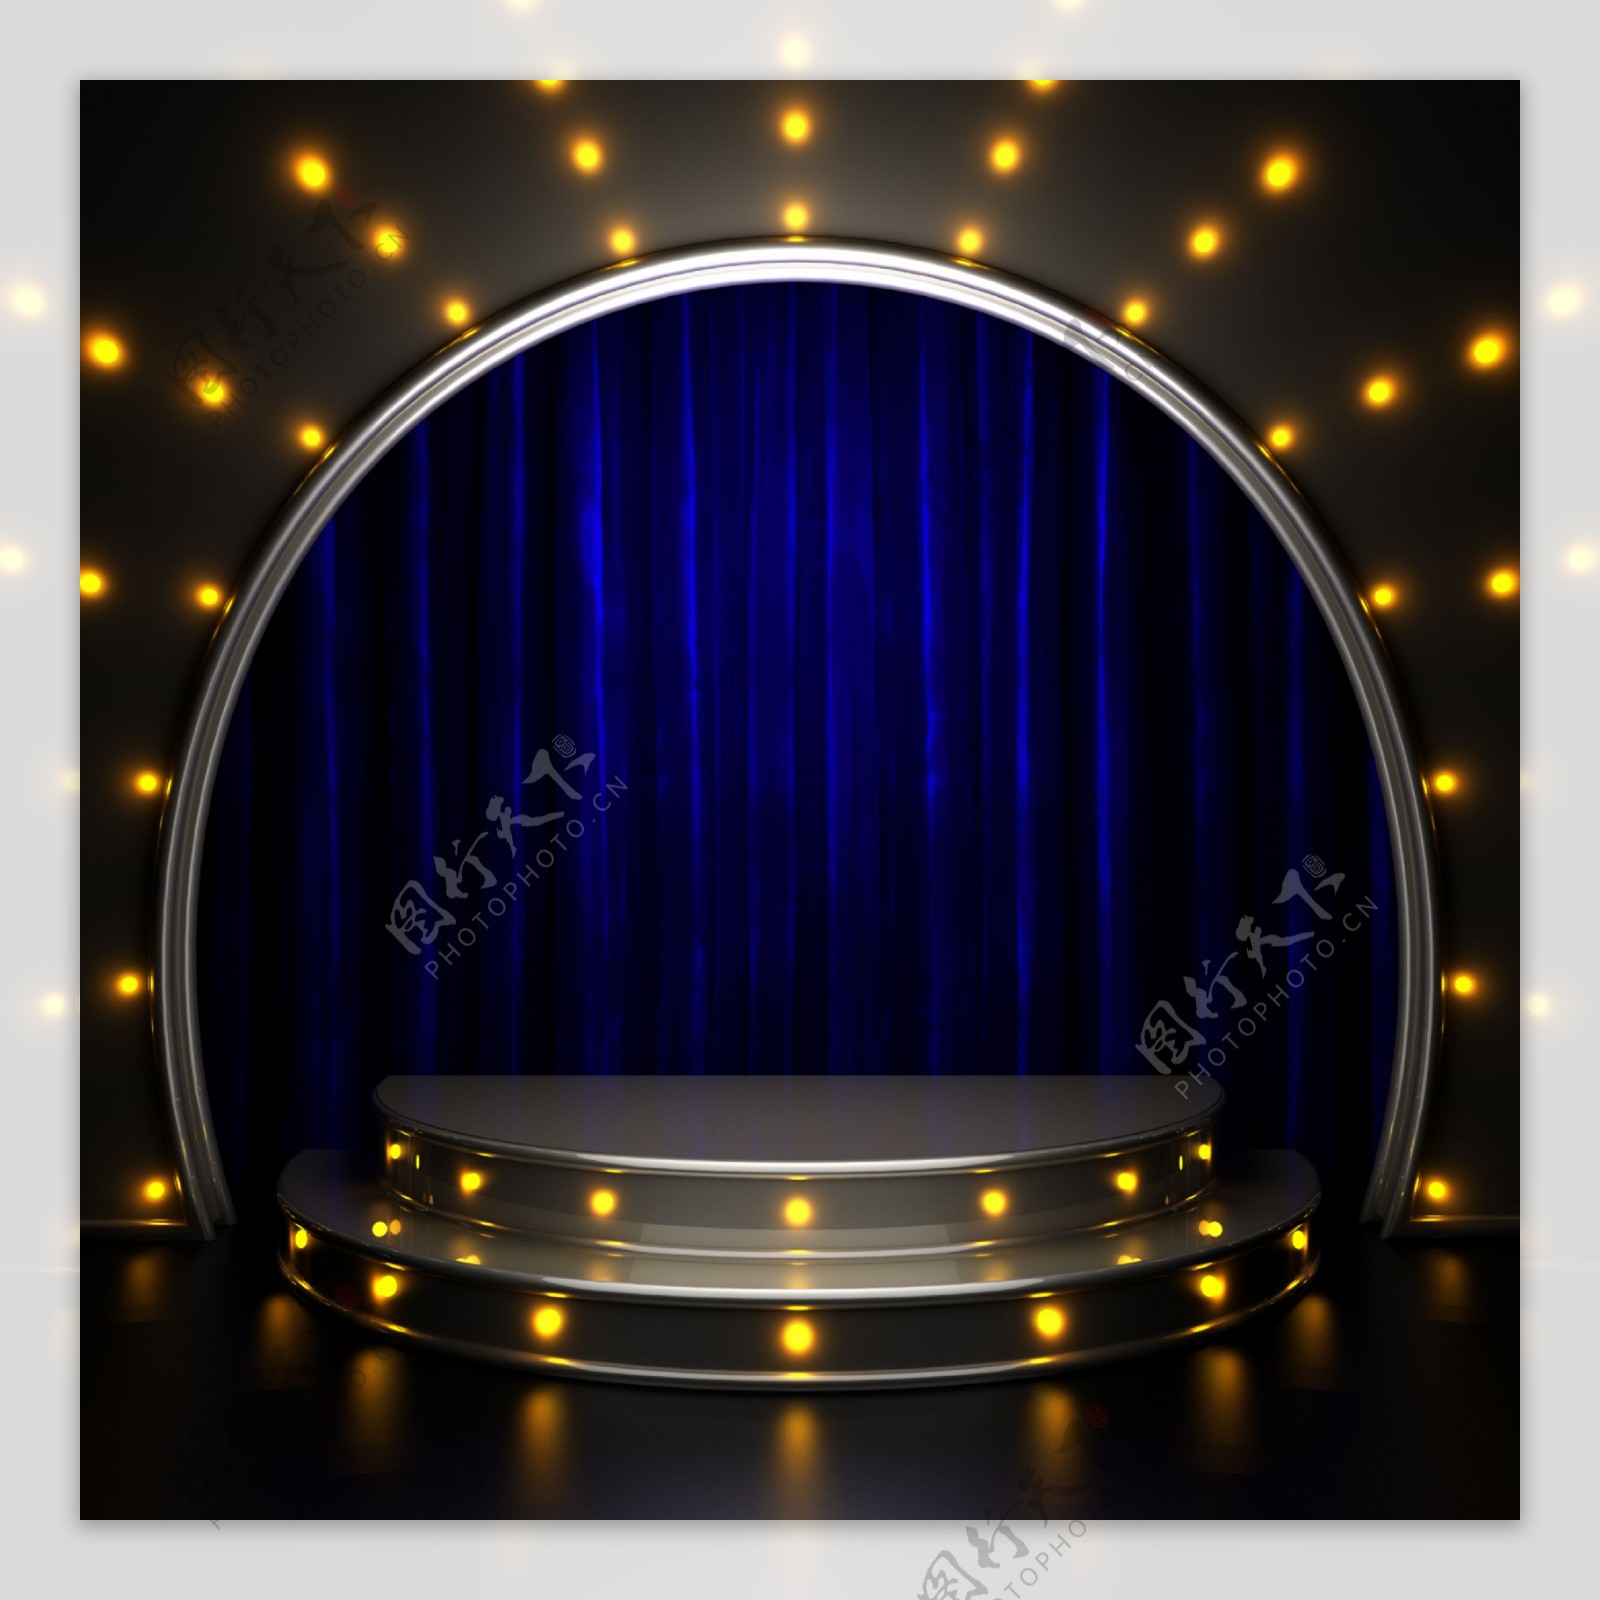 蓝色舞台幕布背景图片